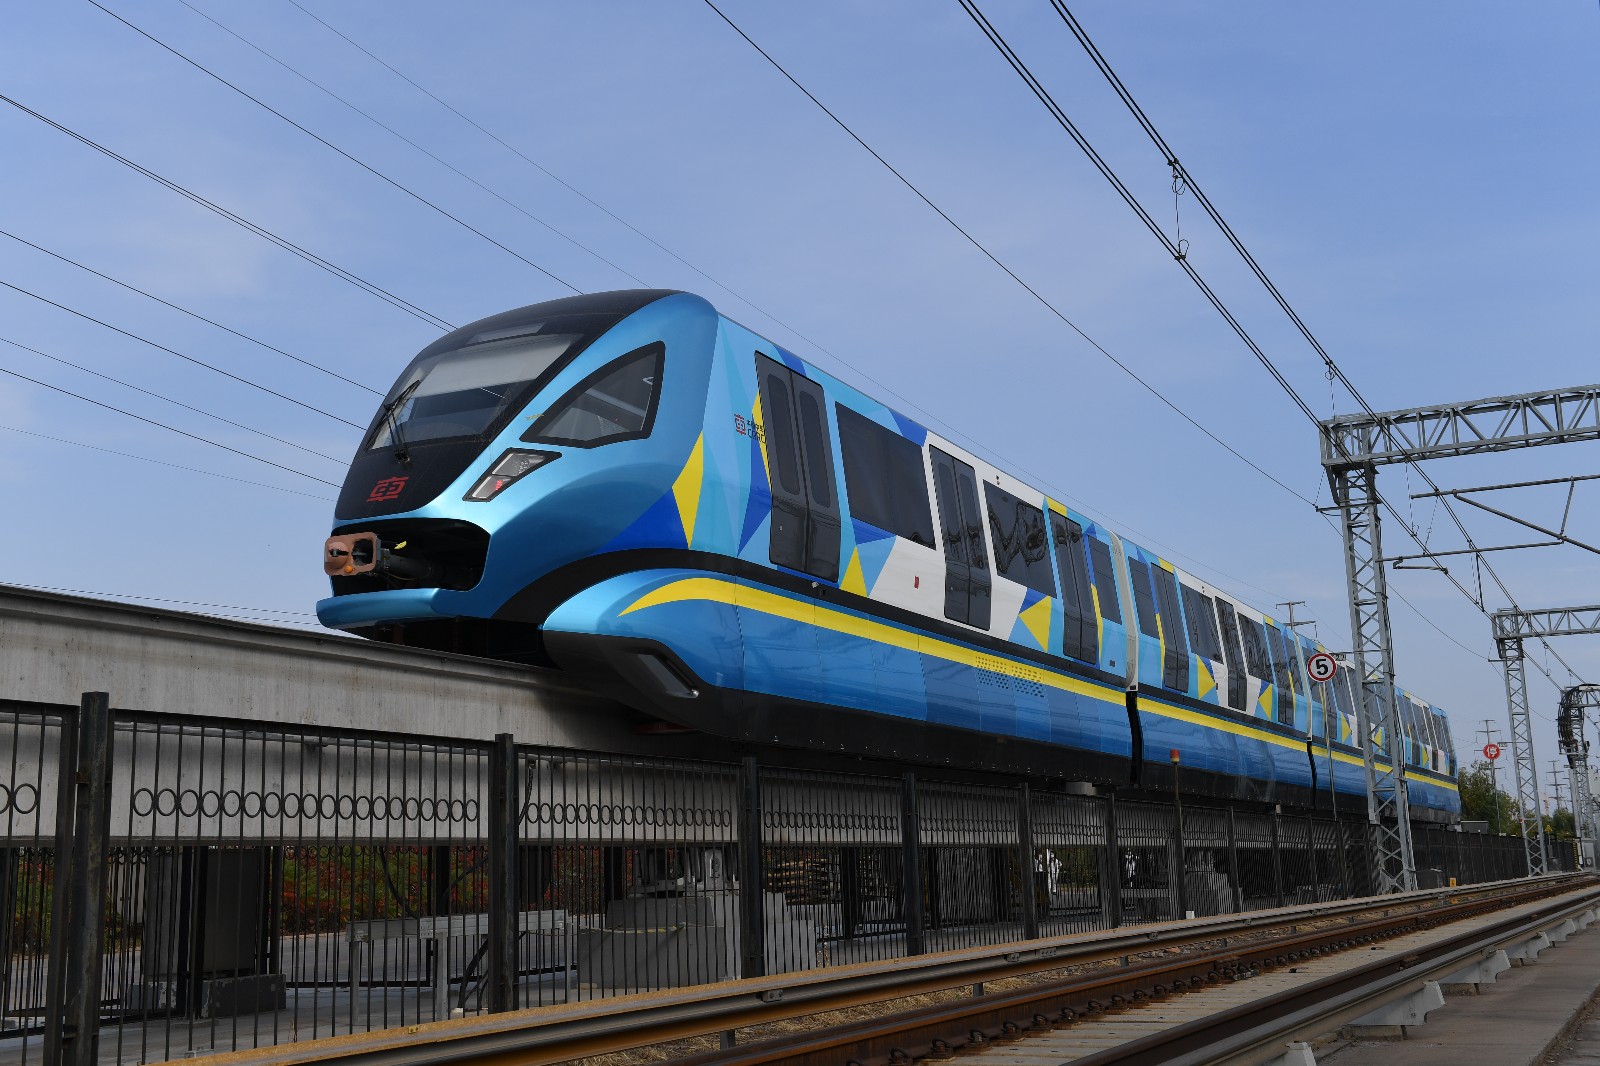 该车兼具地铁与单轨列车技术优势,标志着我国在跨座式单轨车辆技术